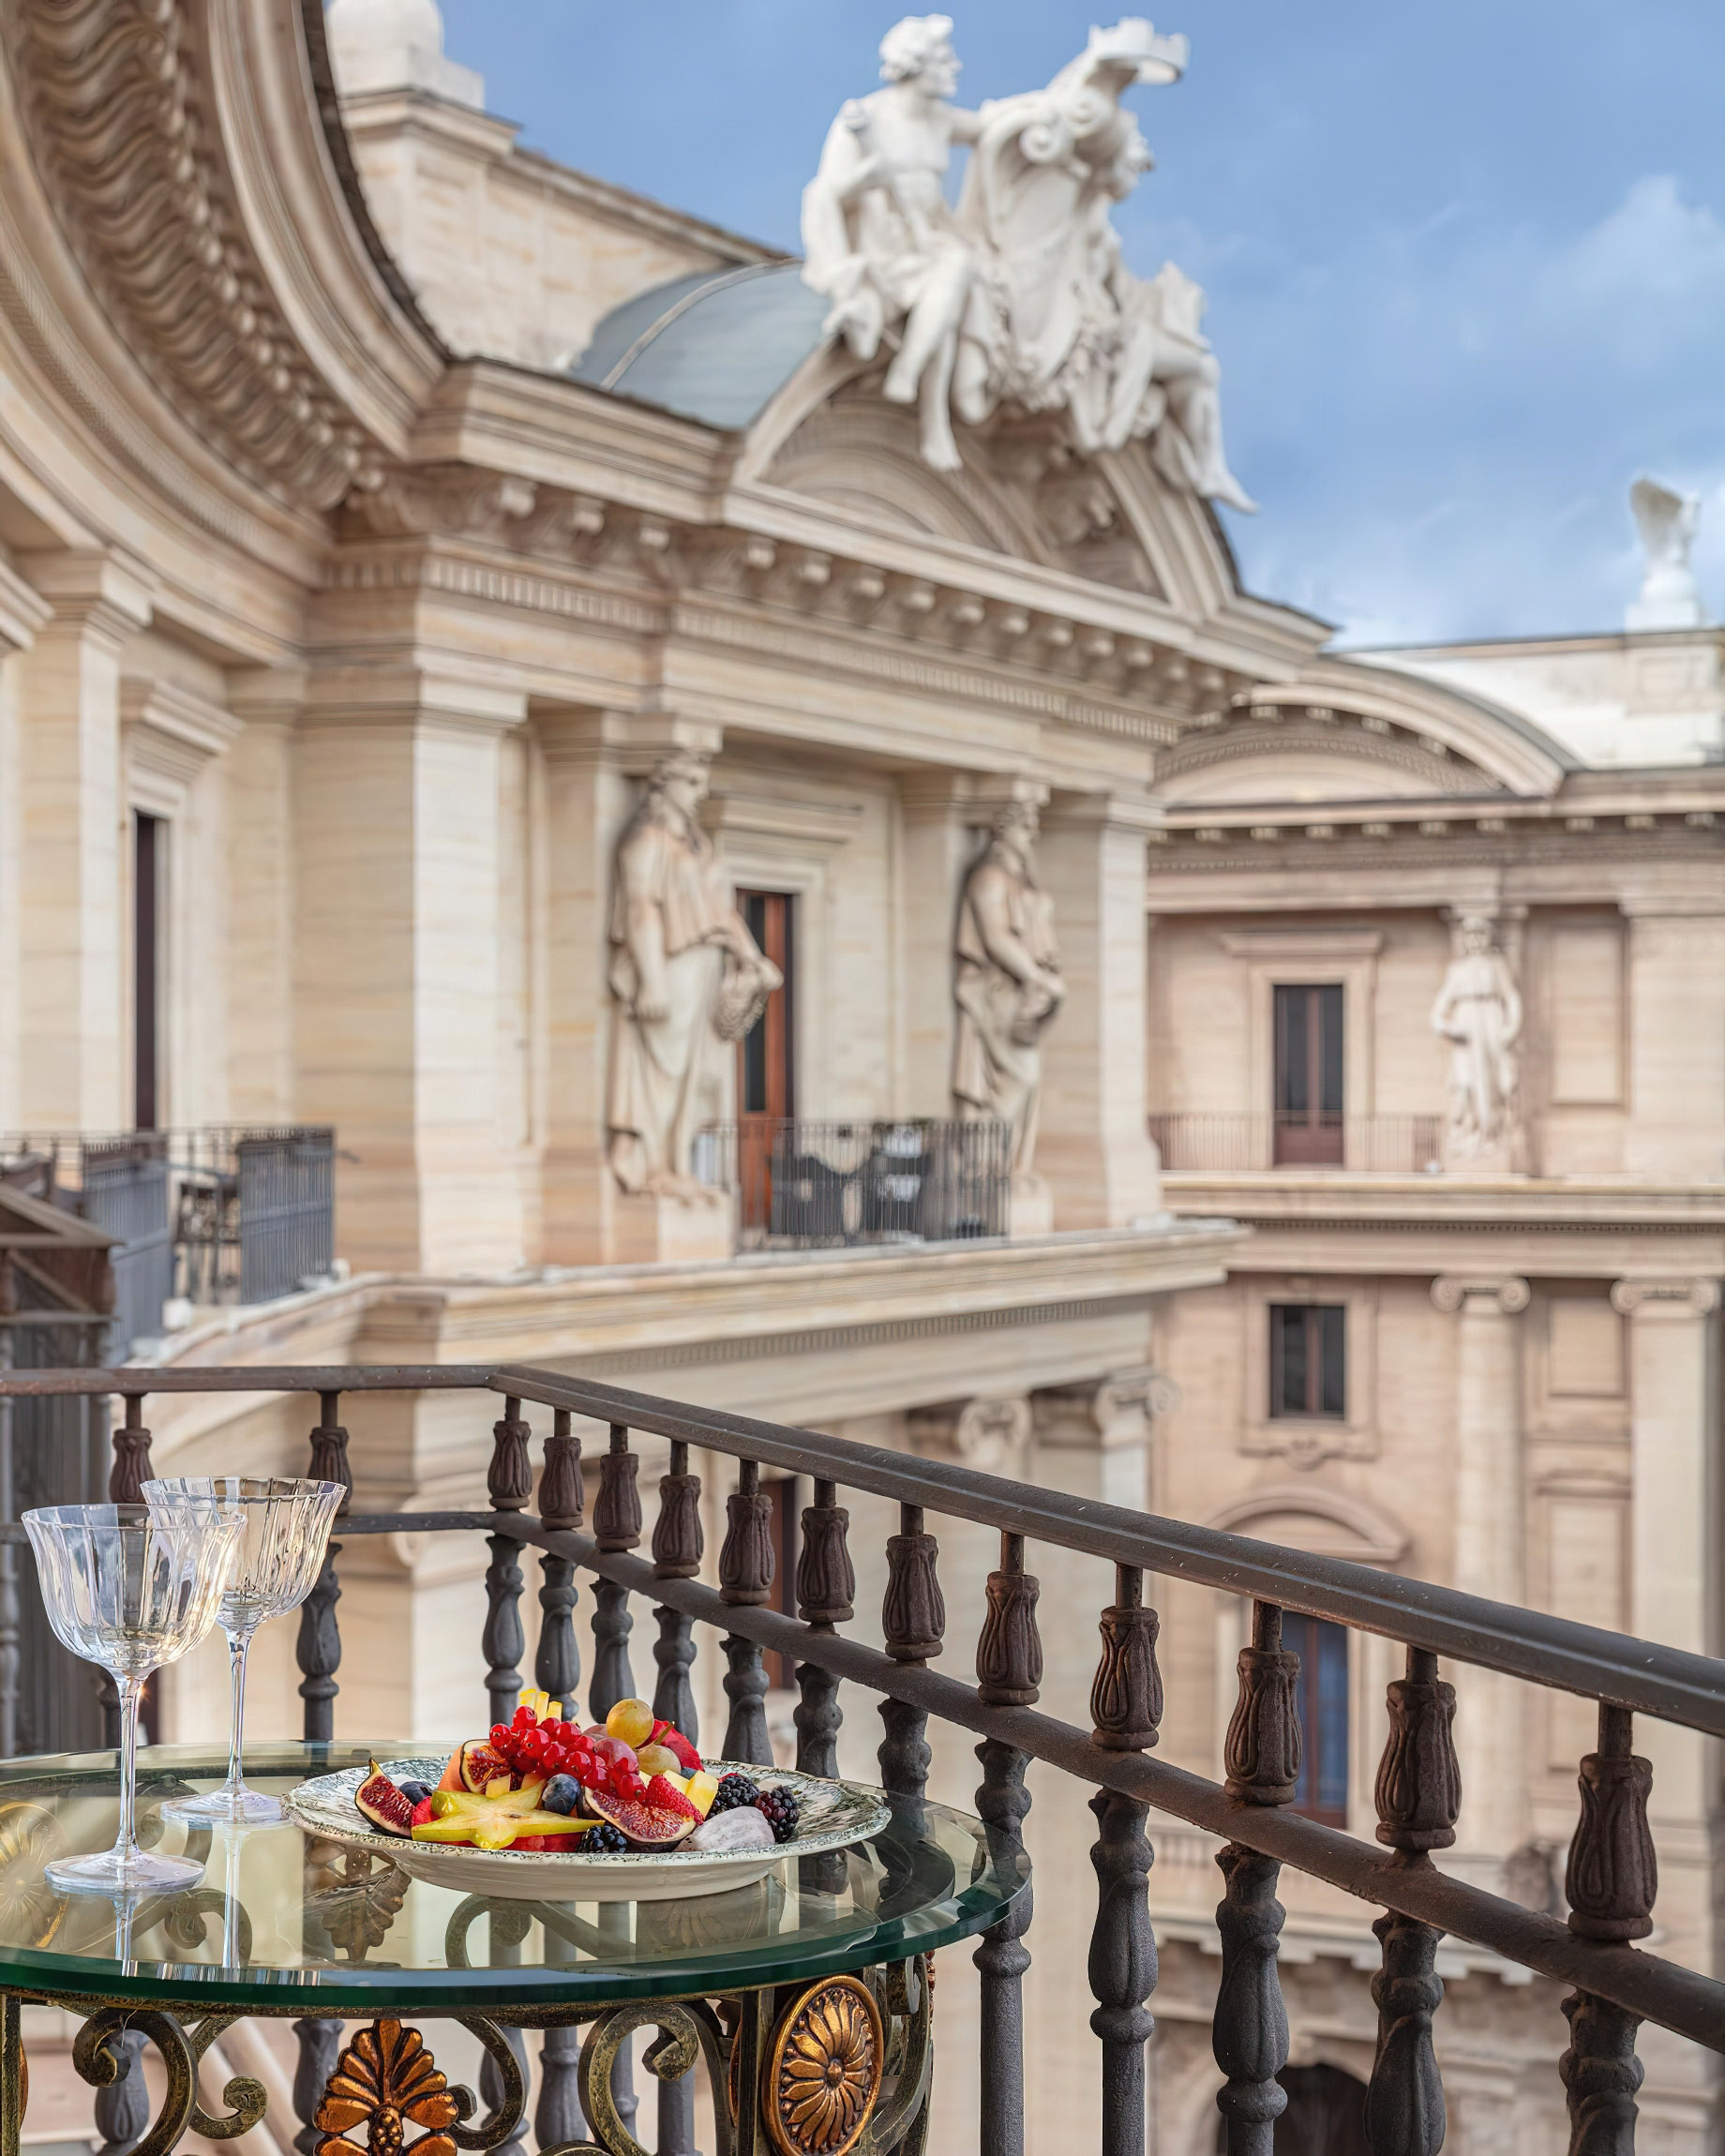 Anantara Palazzo Naiadi Rome Hotel – Rome, Italy – Balcony Dining